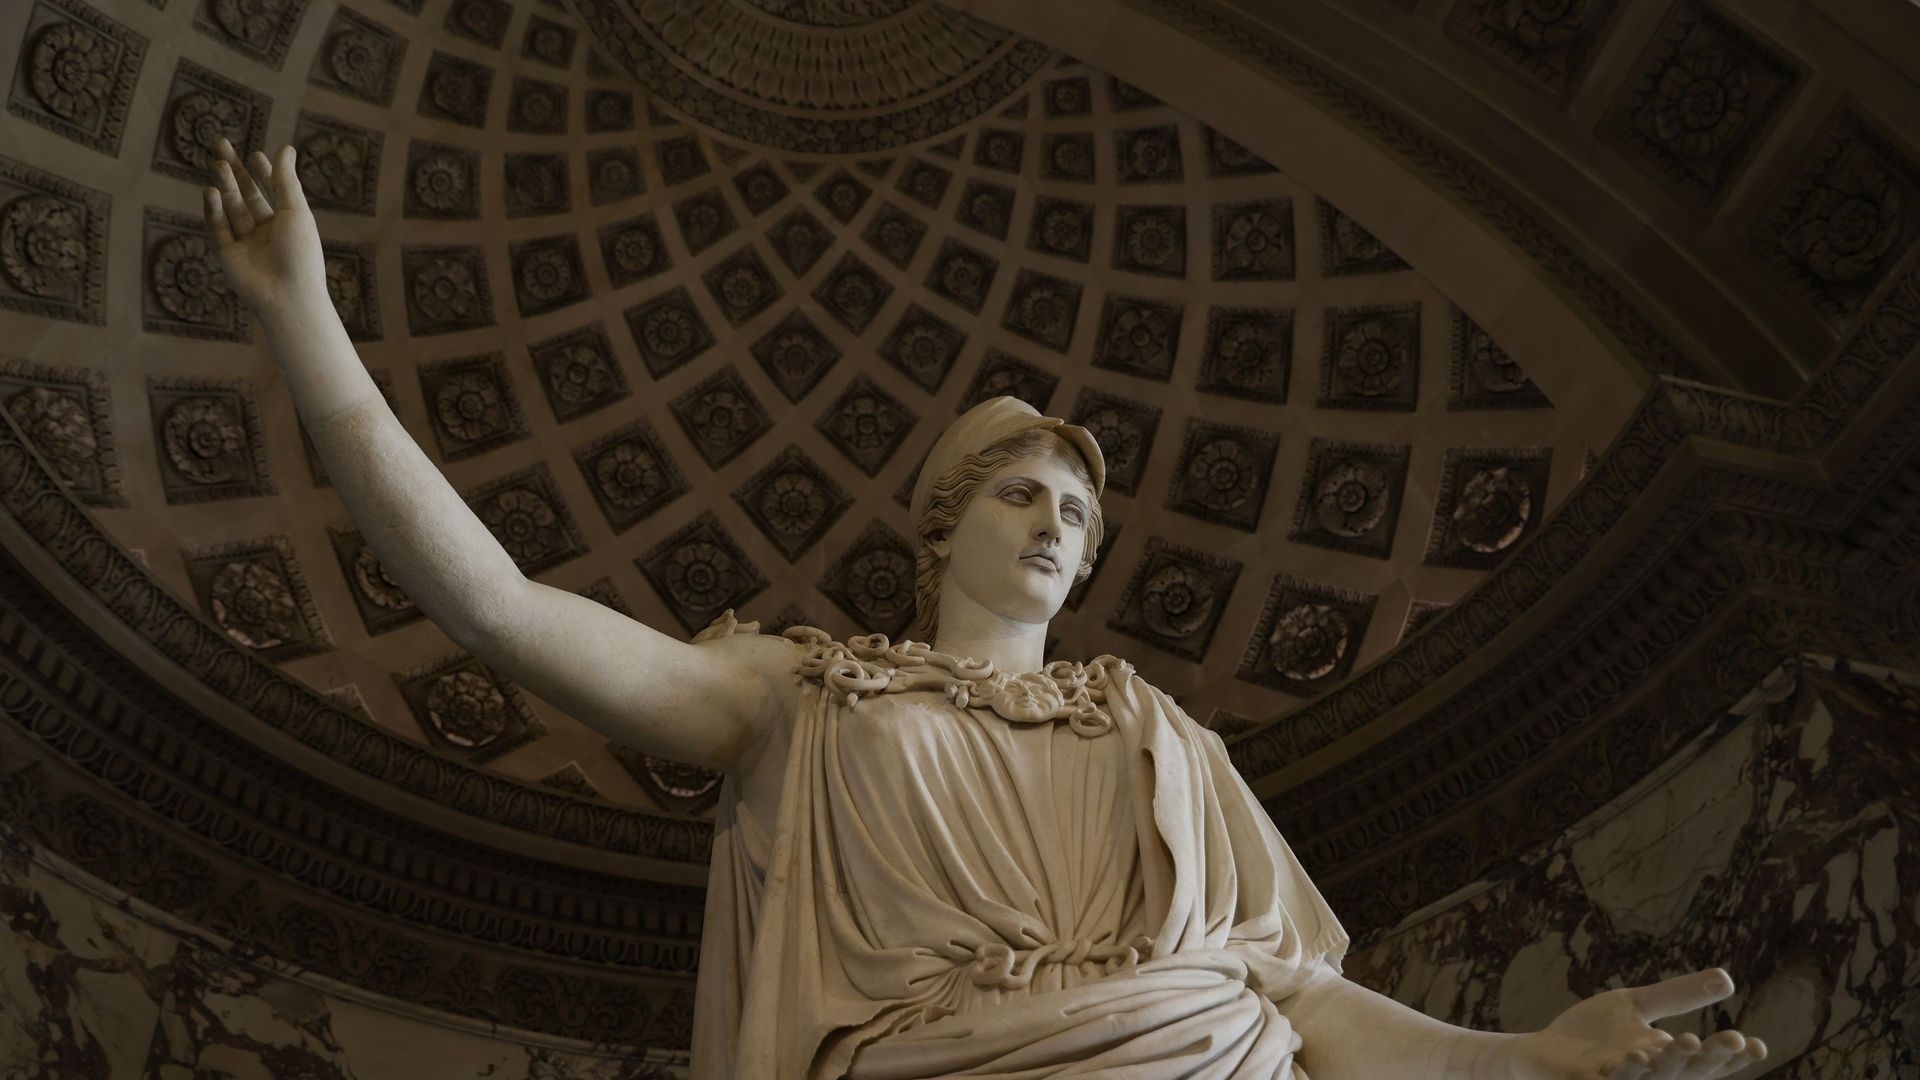 De 3,05 mètres de hauteur, représentant Athéna portant le casque et l'égide ornée de la tête de la Gorgone, elle fait face à la Vénus de Milo, chacune à une extrémité de la grande galerie des antiquités grecques et romaines.